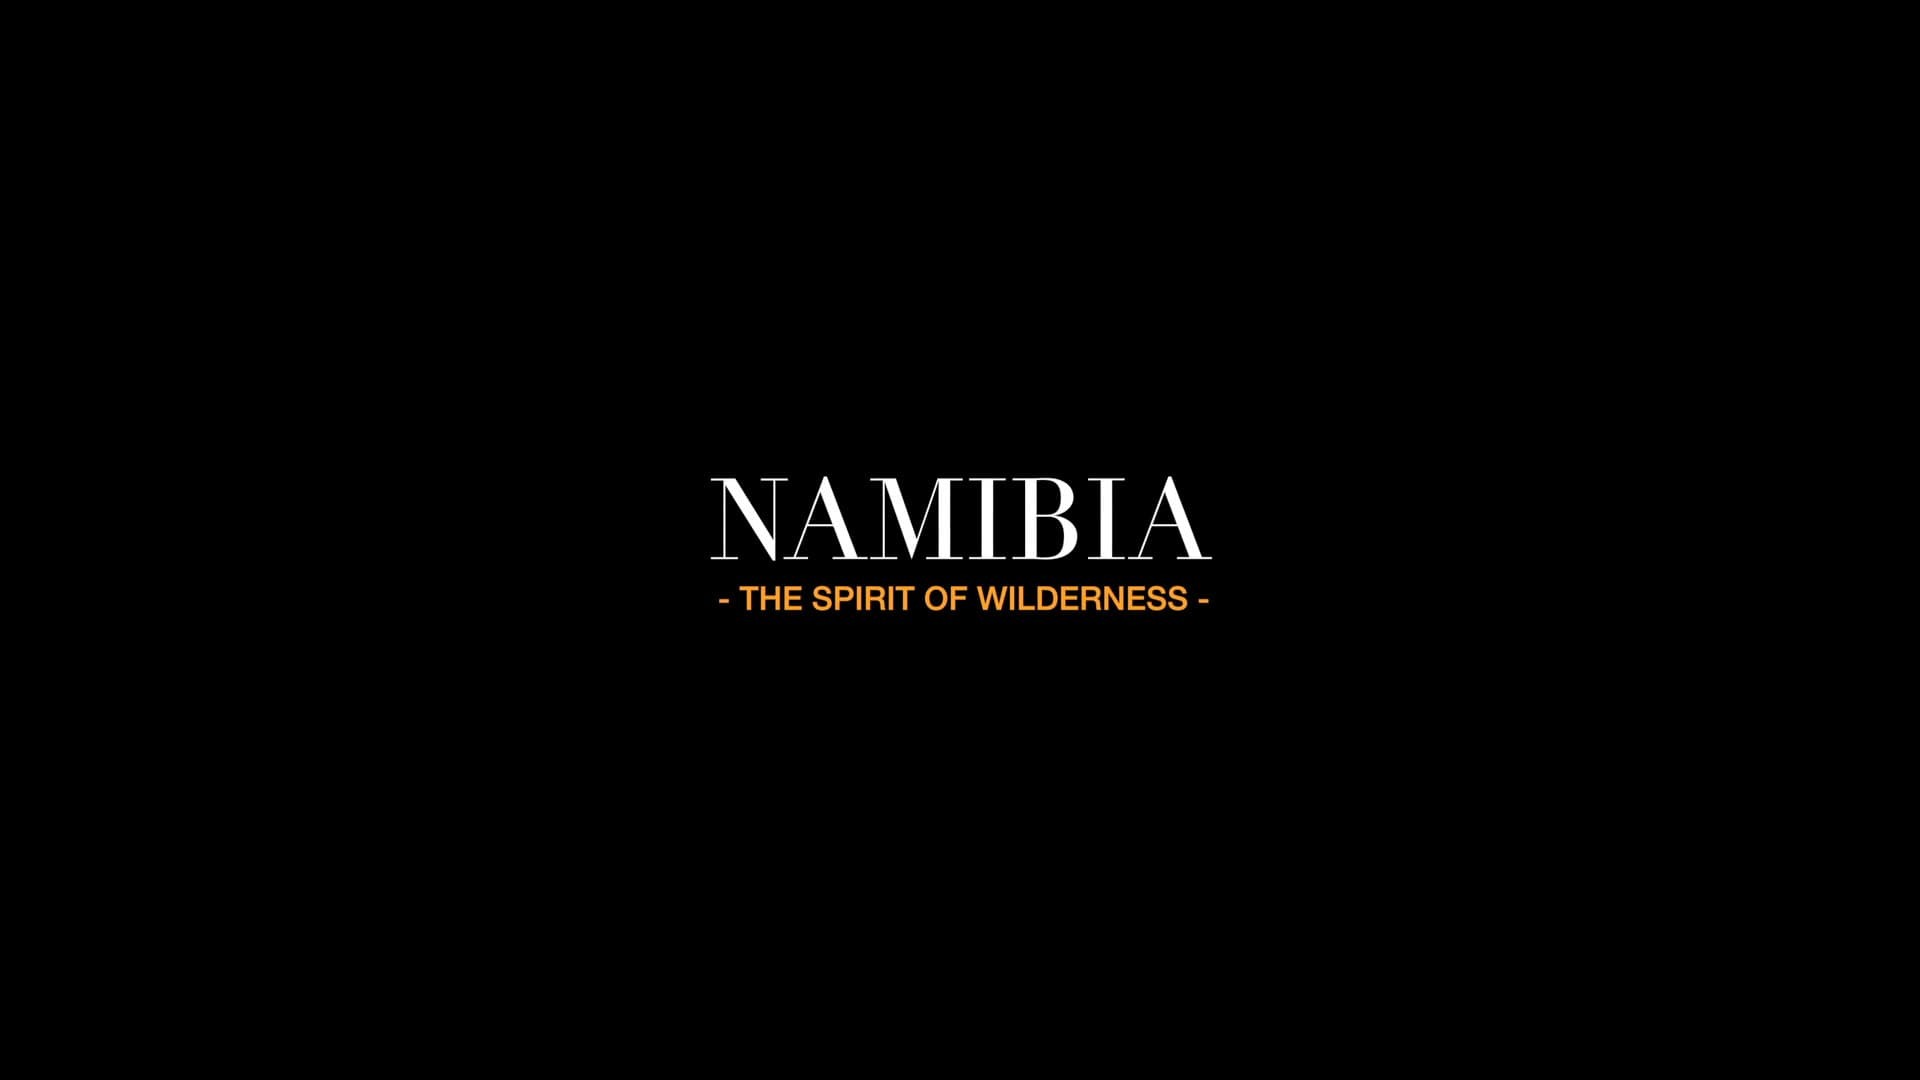 ნამიბია - უდაბნოს სული / Namibia - The Spirit of Wilderness